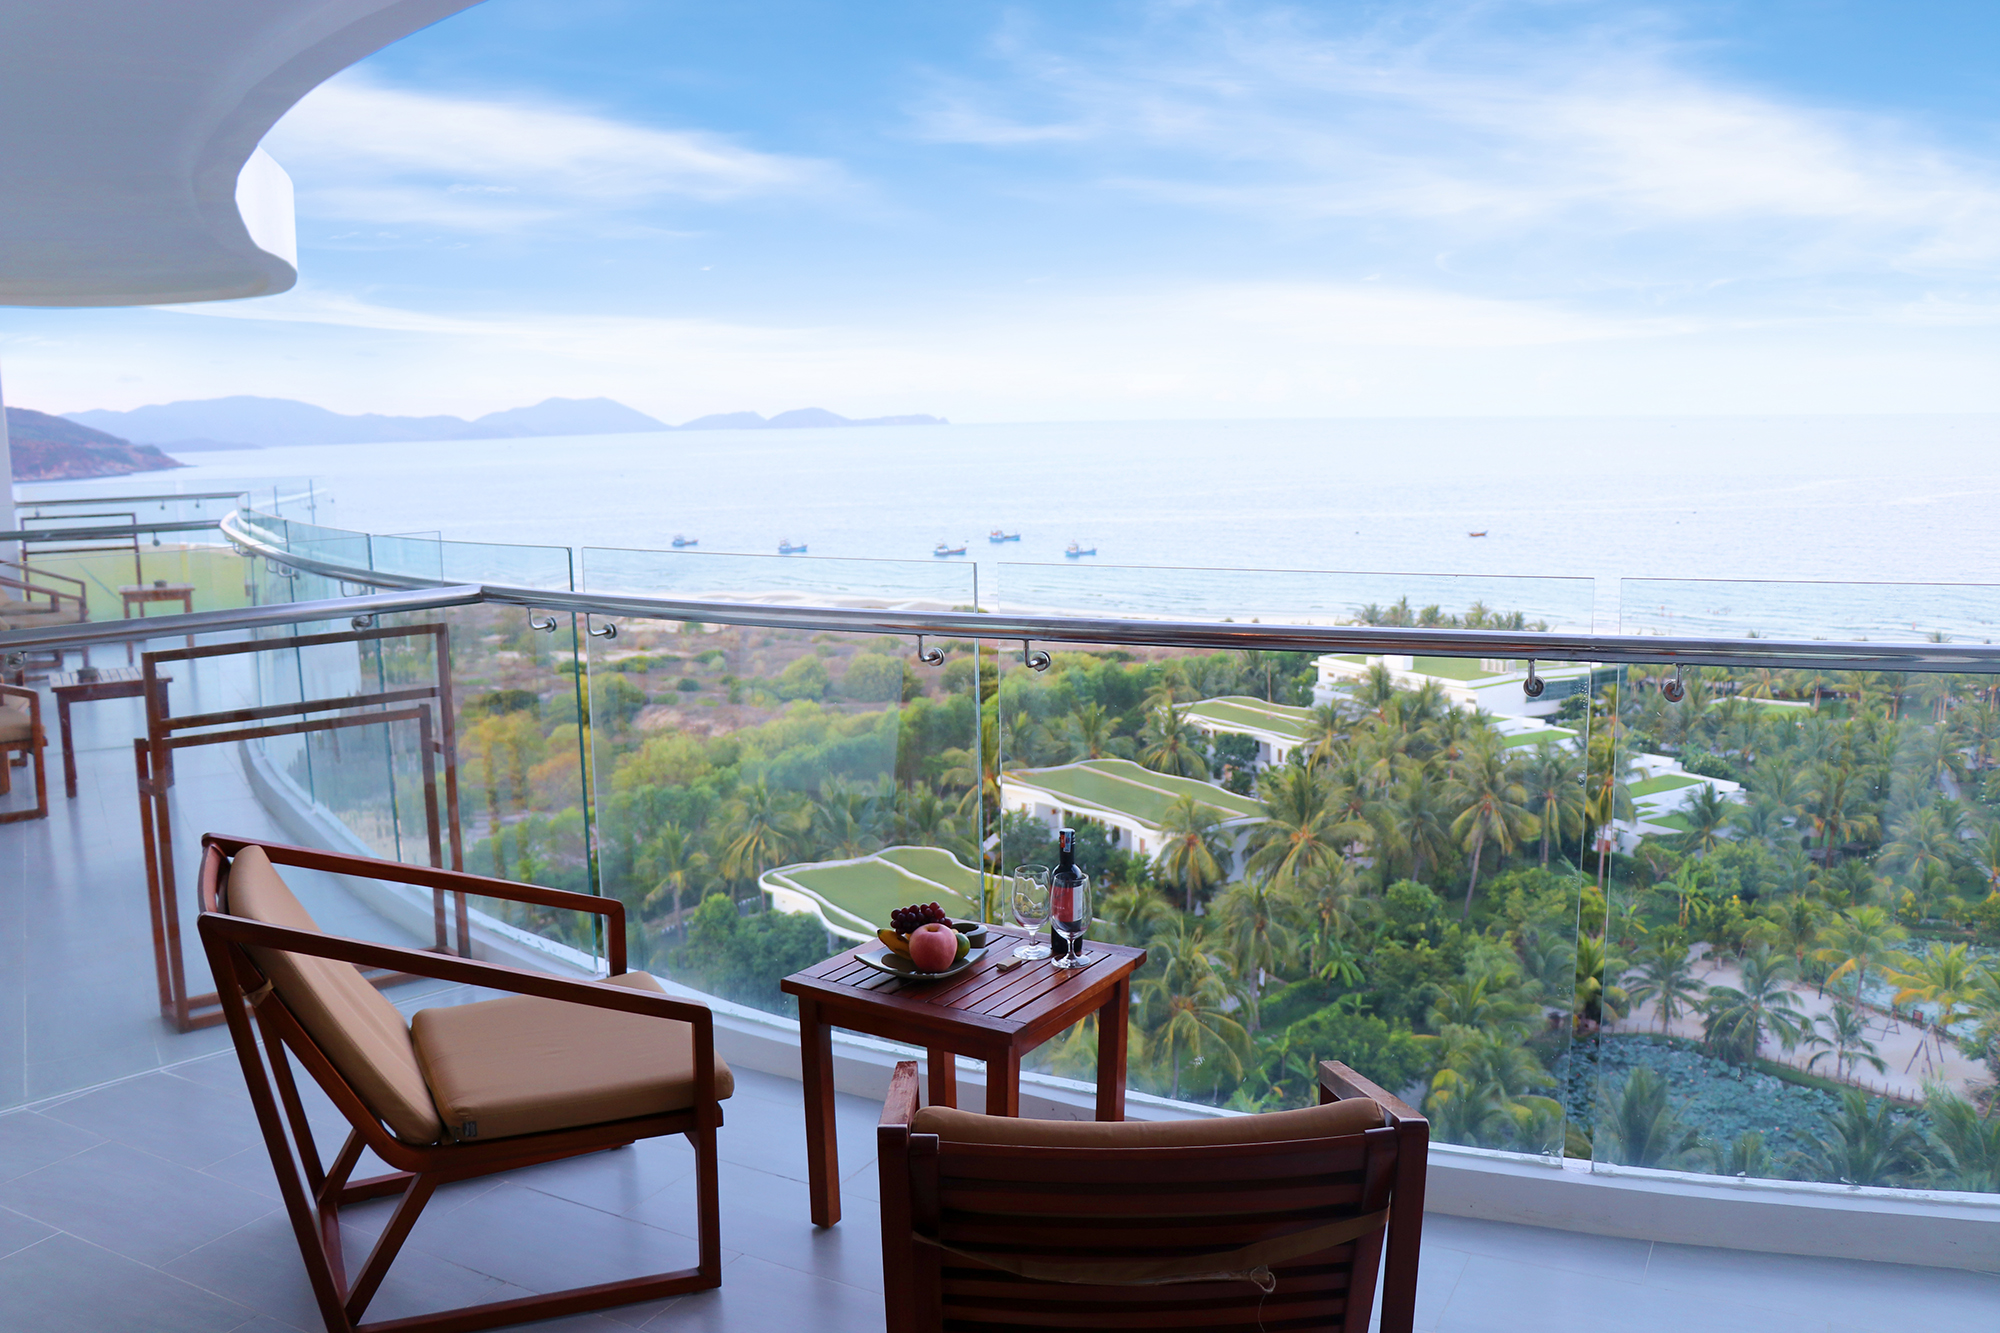 Voucher du lịch nghỉ dưỡng tại Riviera Resort Cam Ranh - 3 bữa buffet, đồ uống không giới hạn, đưa đón sân bay